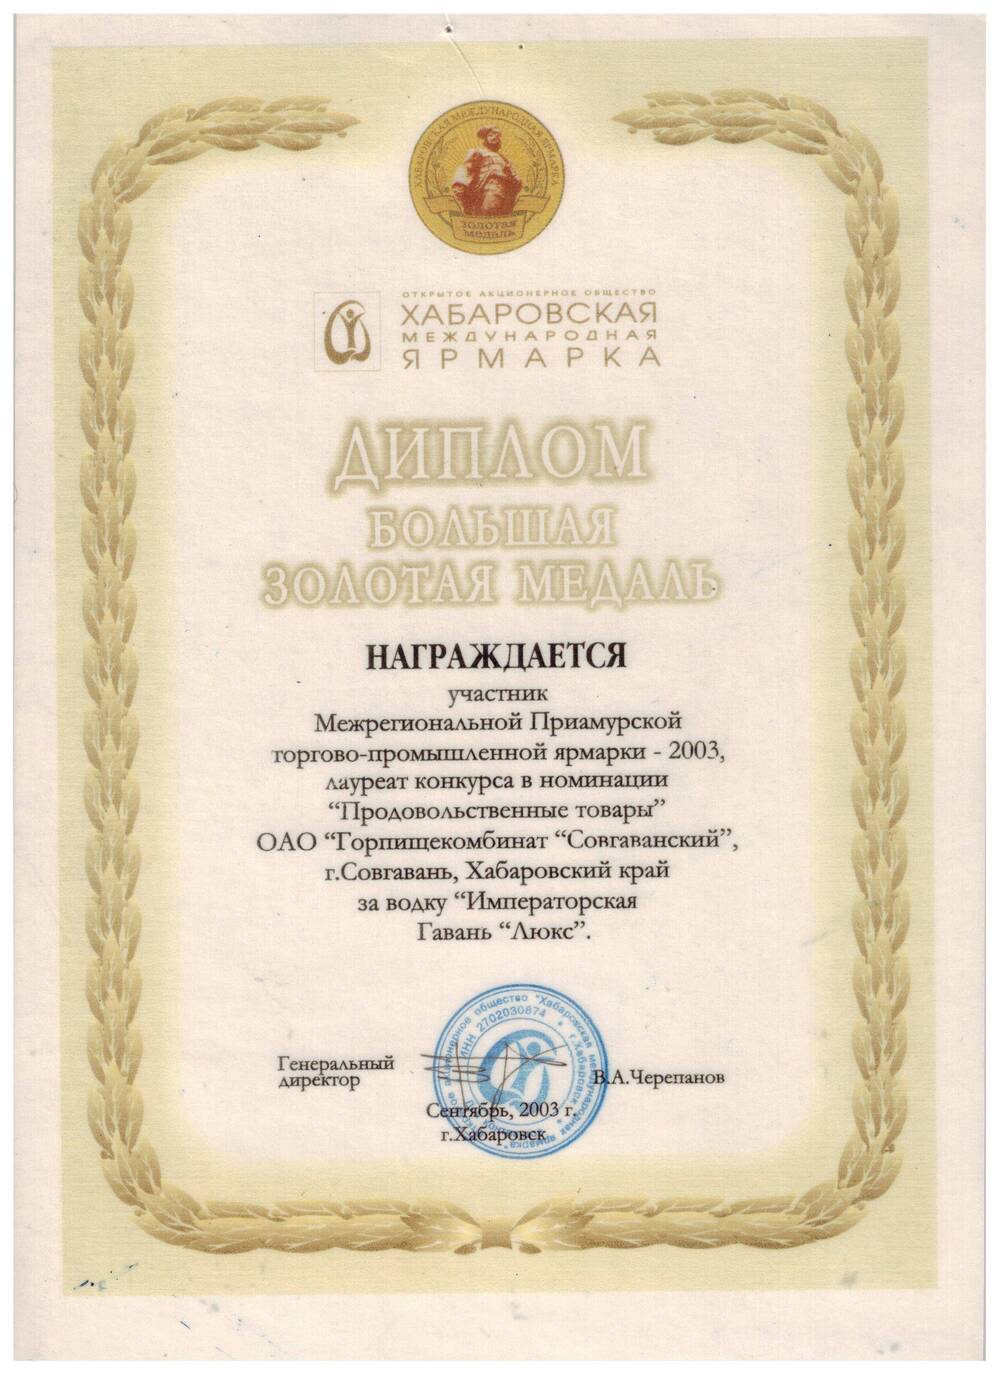 Диплом о награждении Большой золотой медалью ОАО «Горпищекомбинат «Совгаванский»